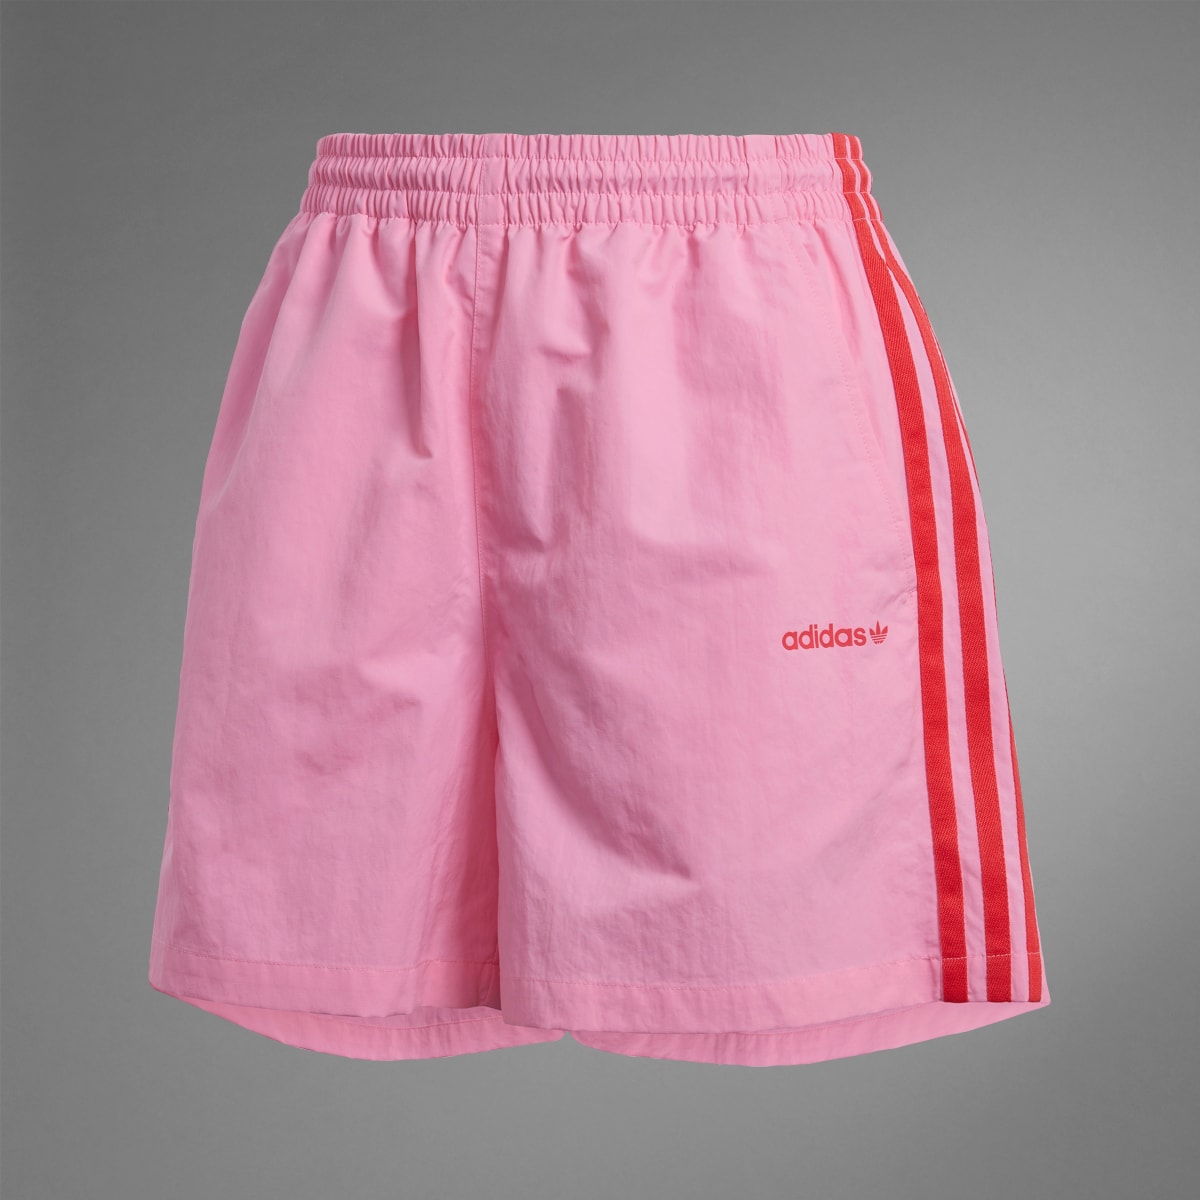 Adidas Island Club Shorts. 10